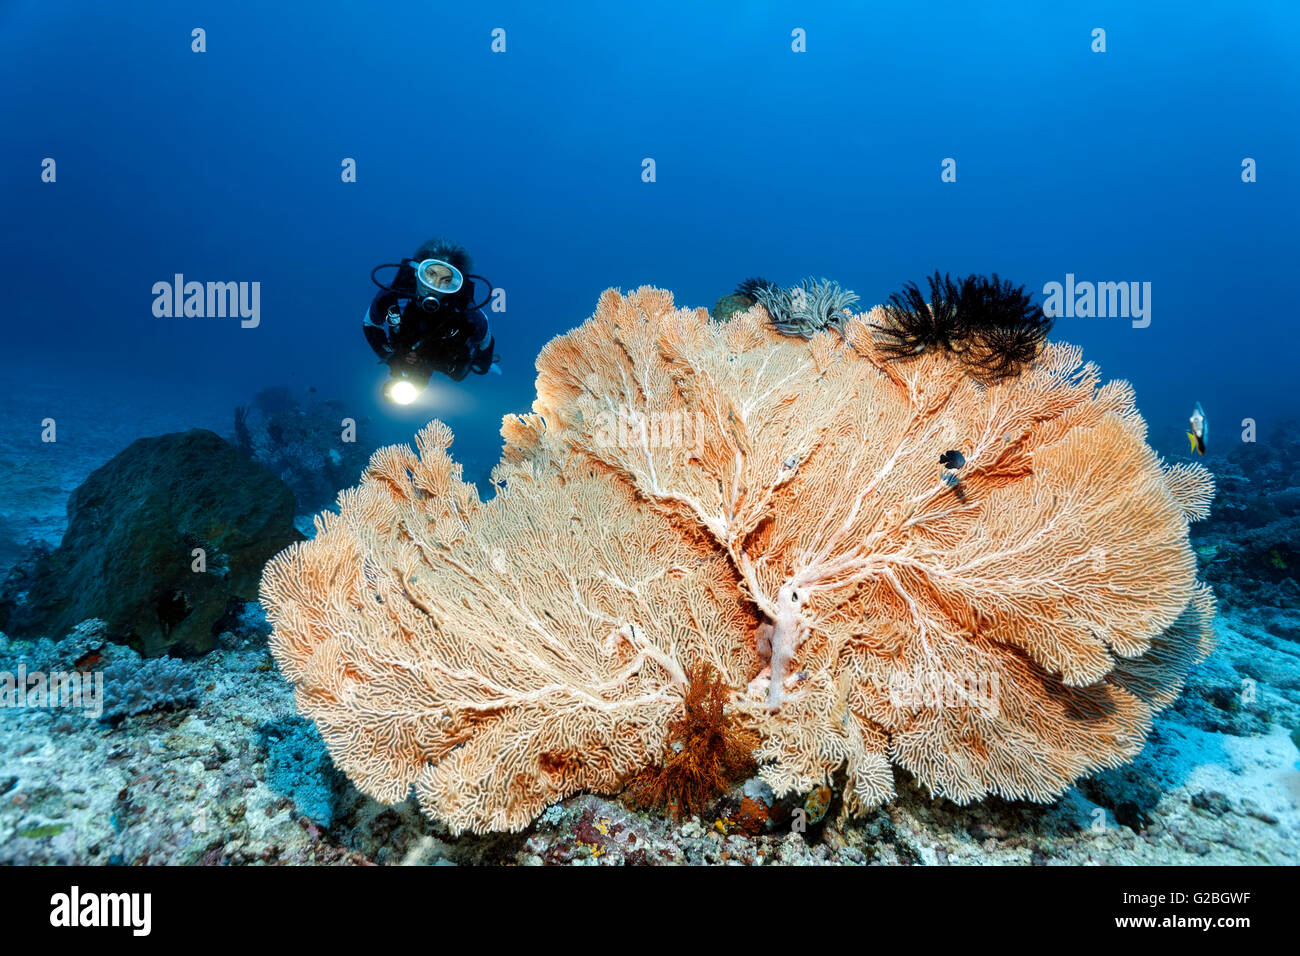 Taucher und riesige Gorgonien (Annella Mollis), Pazifischen Ozean, Australien, Cairns, Great Barrier Reef, Queensland Stockfoto